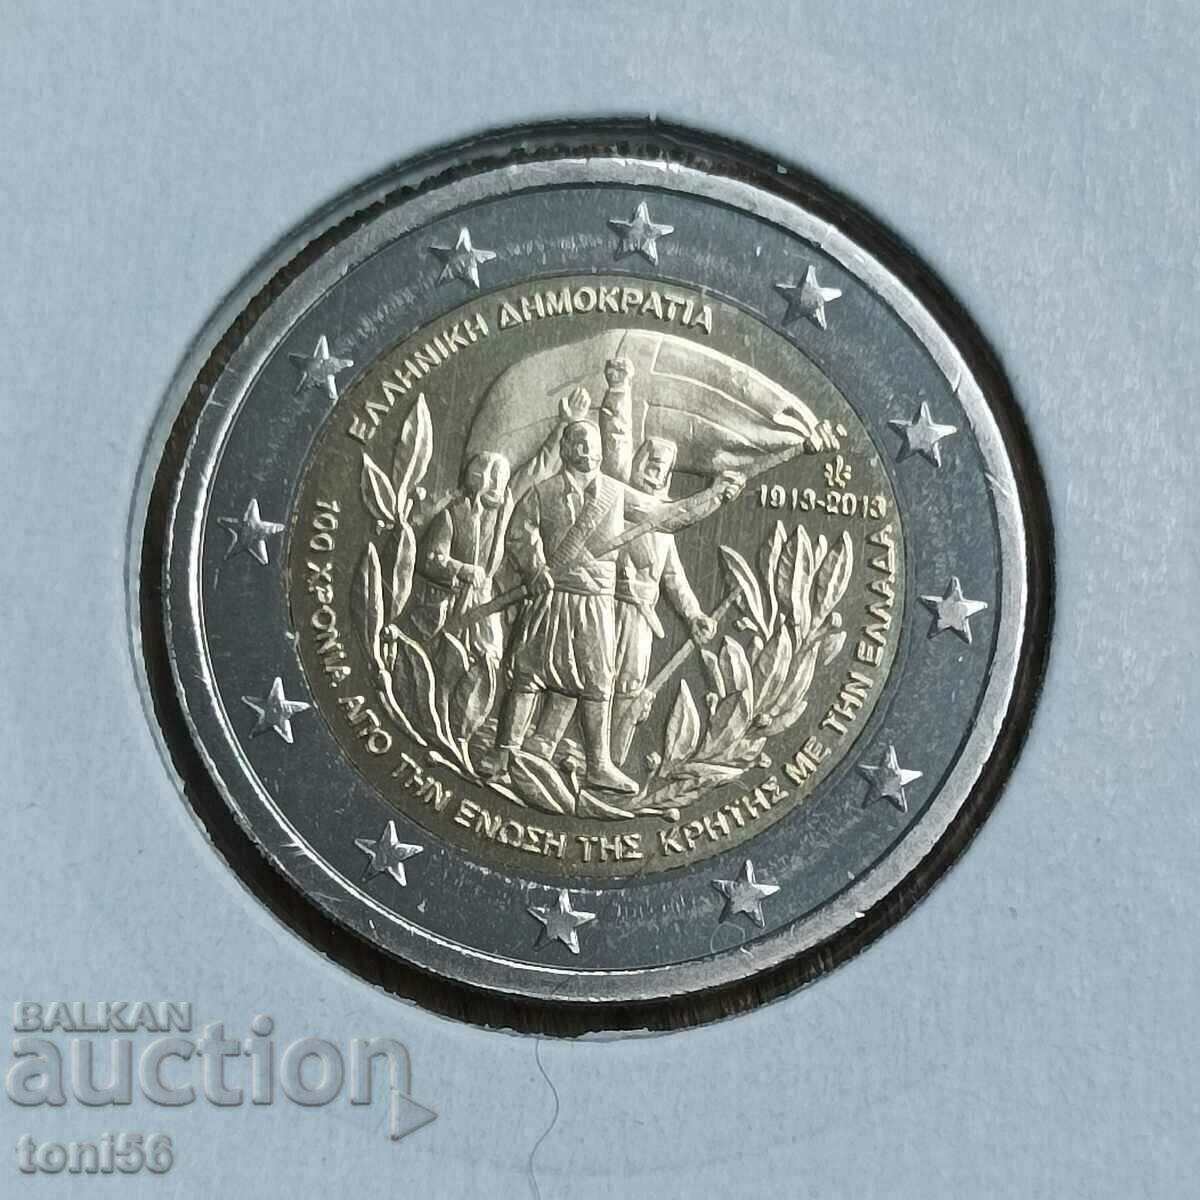 Ελλάδα 2 ευρώ 2013 - Κρήτη